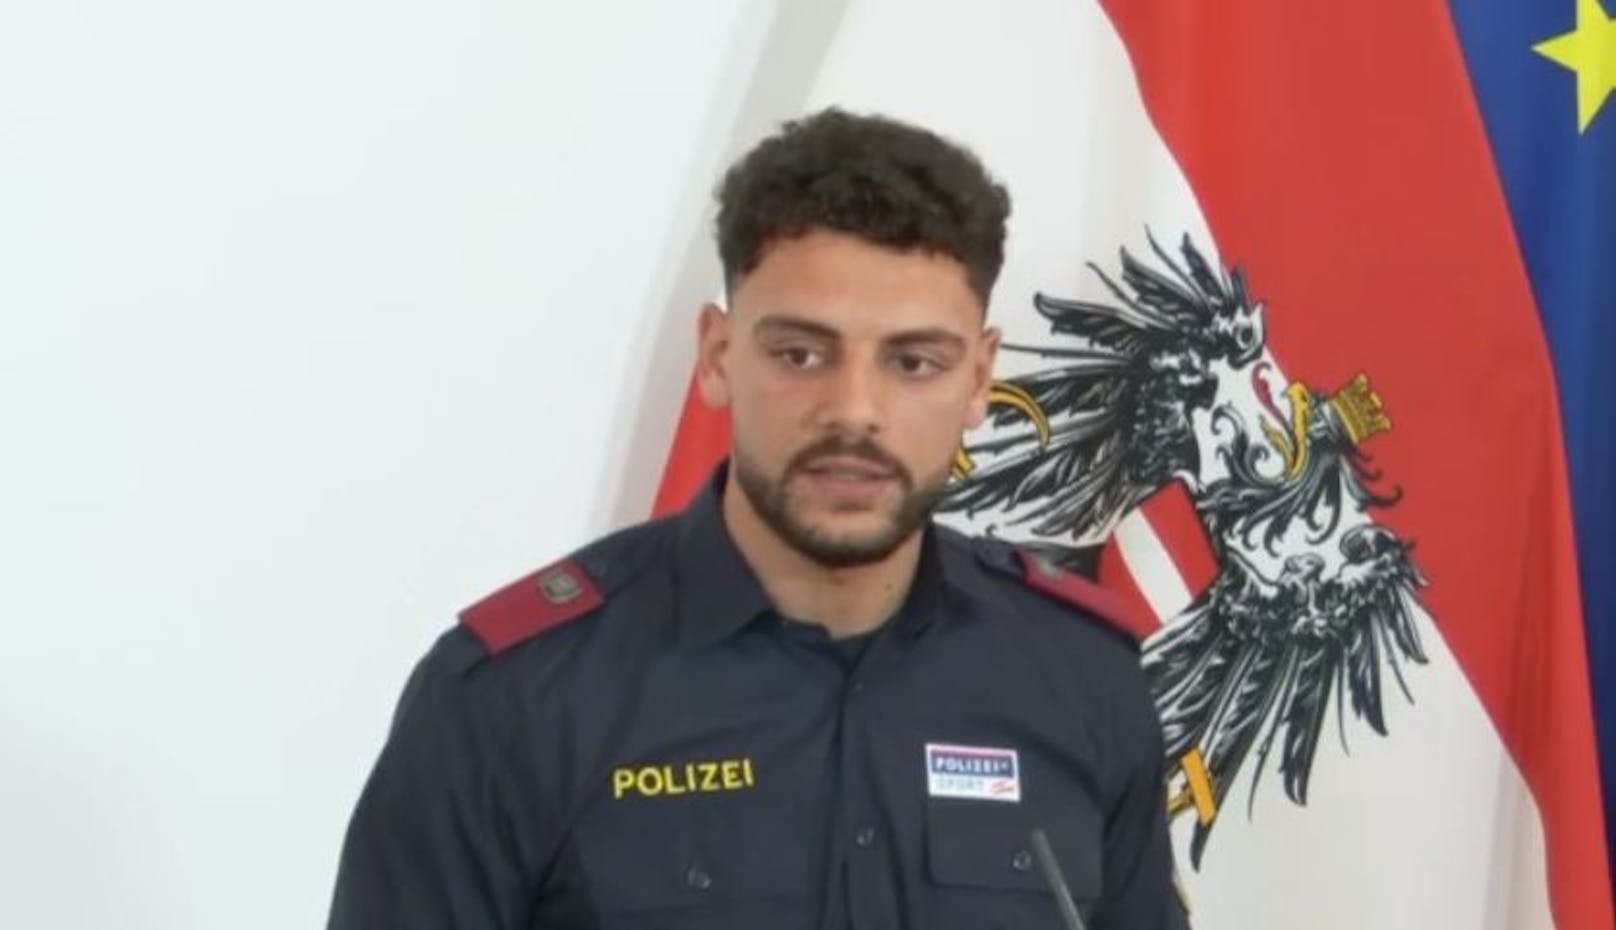 Karim Mabrouk ist angehender Polizist und Kickboxer. Am Mittwoch schilderte er, wie auch er Opfer von Rassismus wurde.